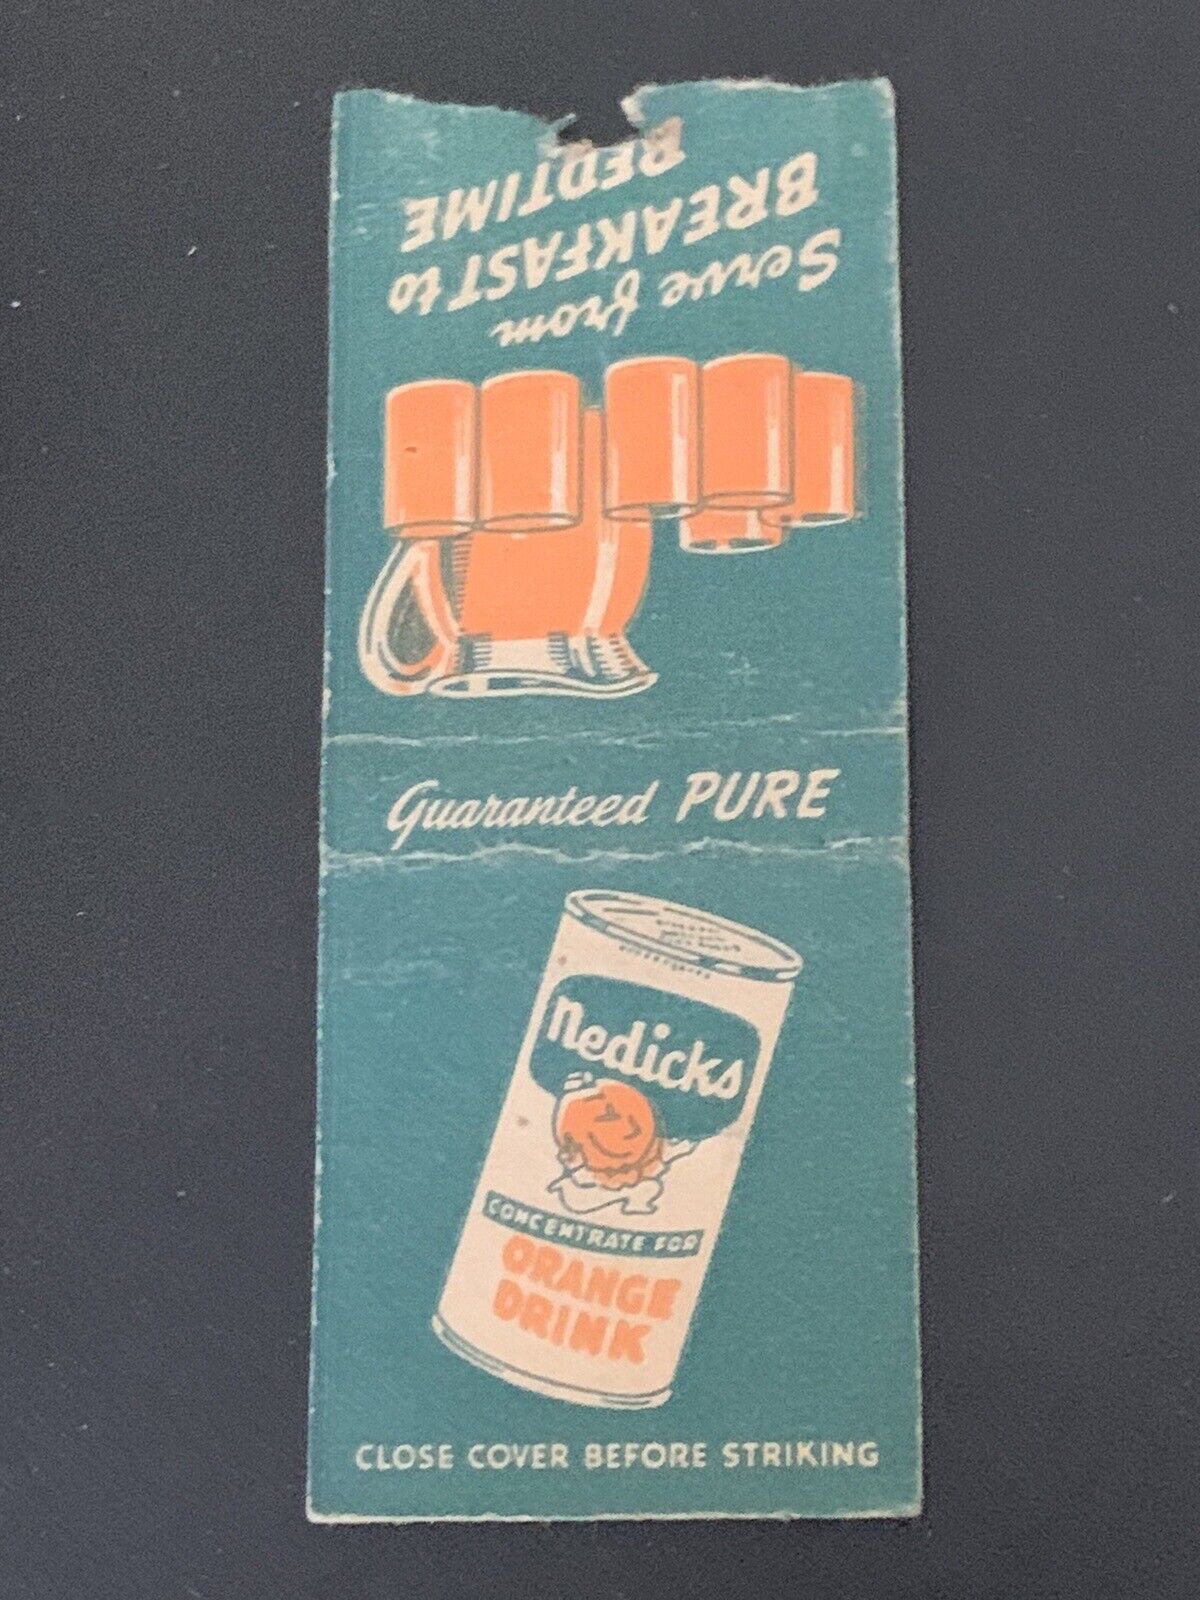 Vintage Bobtail Matchbook: “Nedick’s Concentrate For Orange Drink”